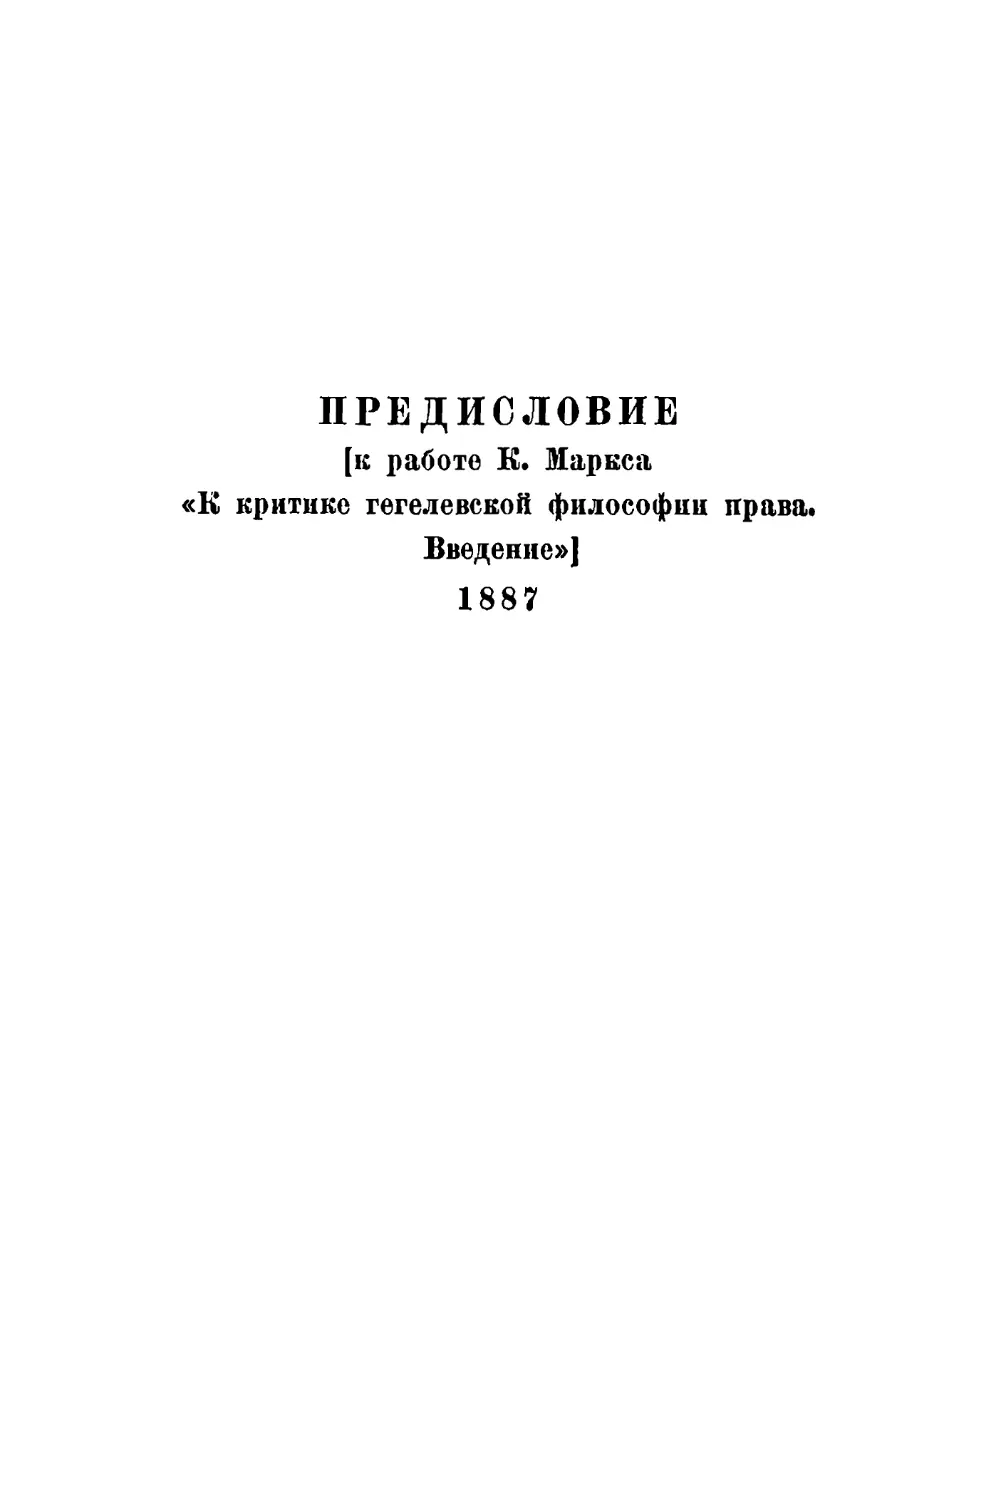 Предисловие [к работе К. Маркса «К критике гегелевской философии права. Введение»]. 1887